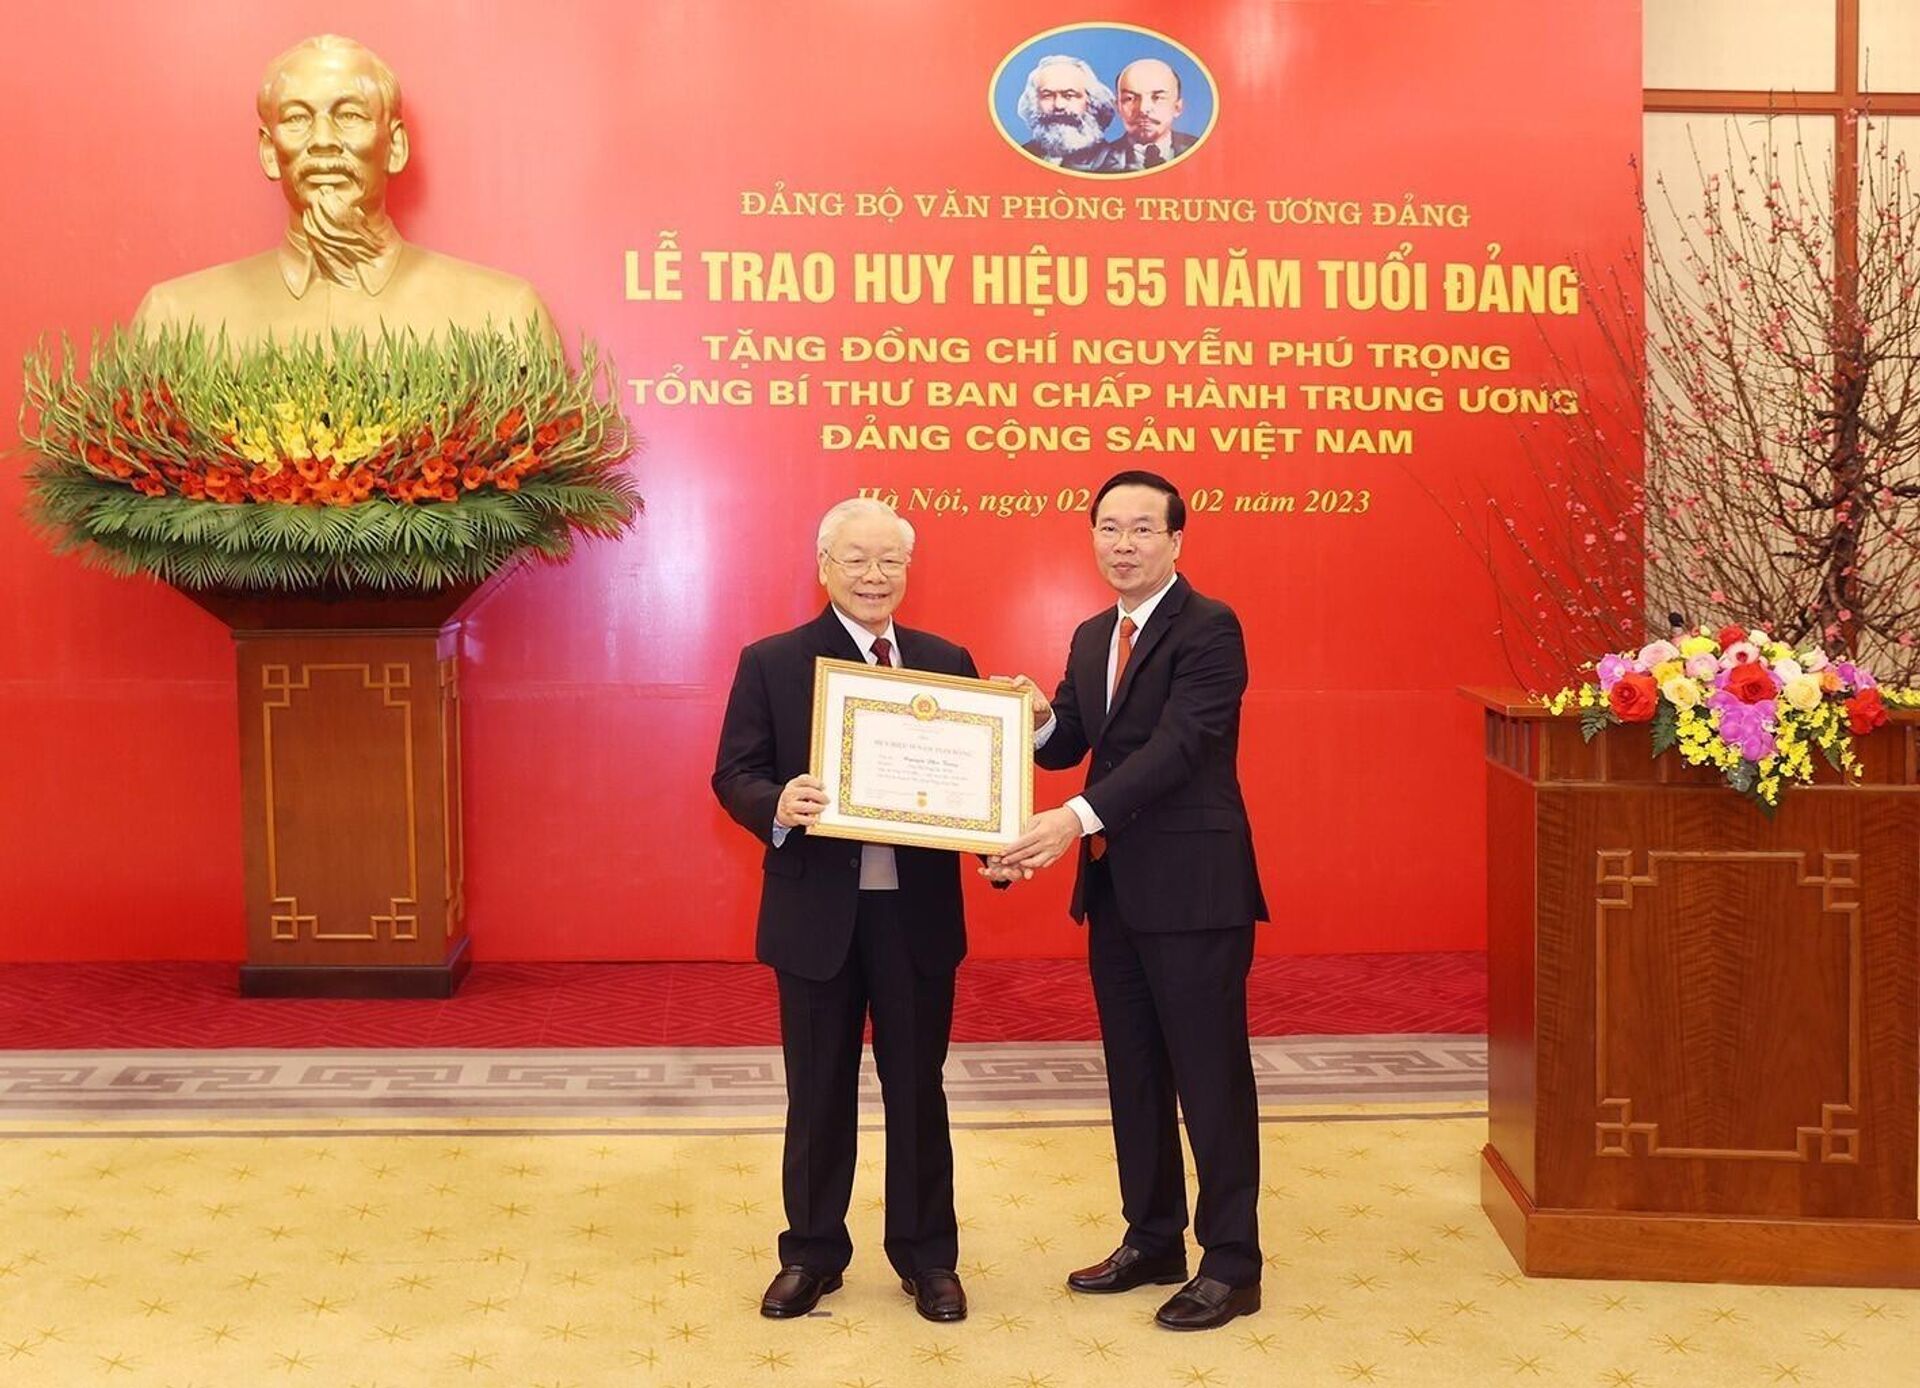 Tổng Bí thư Nguyễn Phú Trọng nhận Huy hiệu 55 năm tuổi Đảng - Sputnik Việt Nam, 1920, 02.02.2023